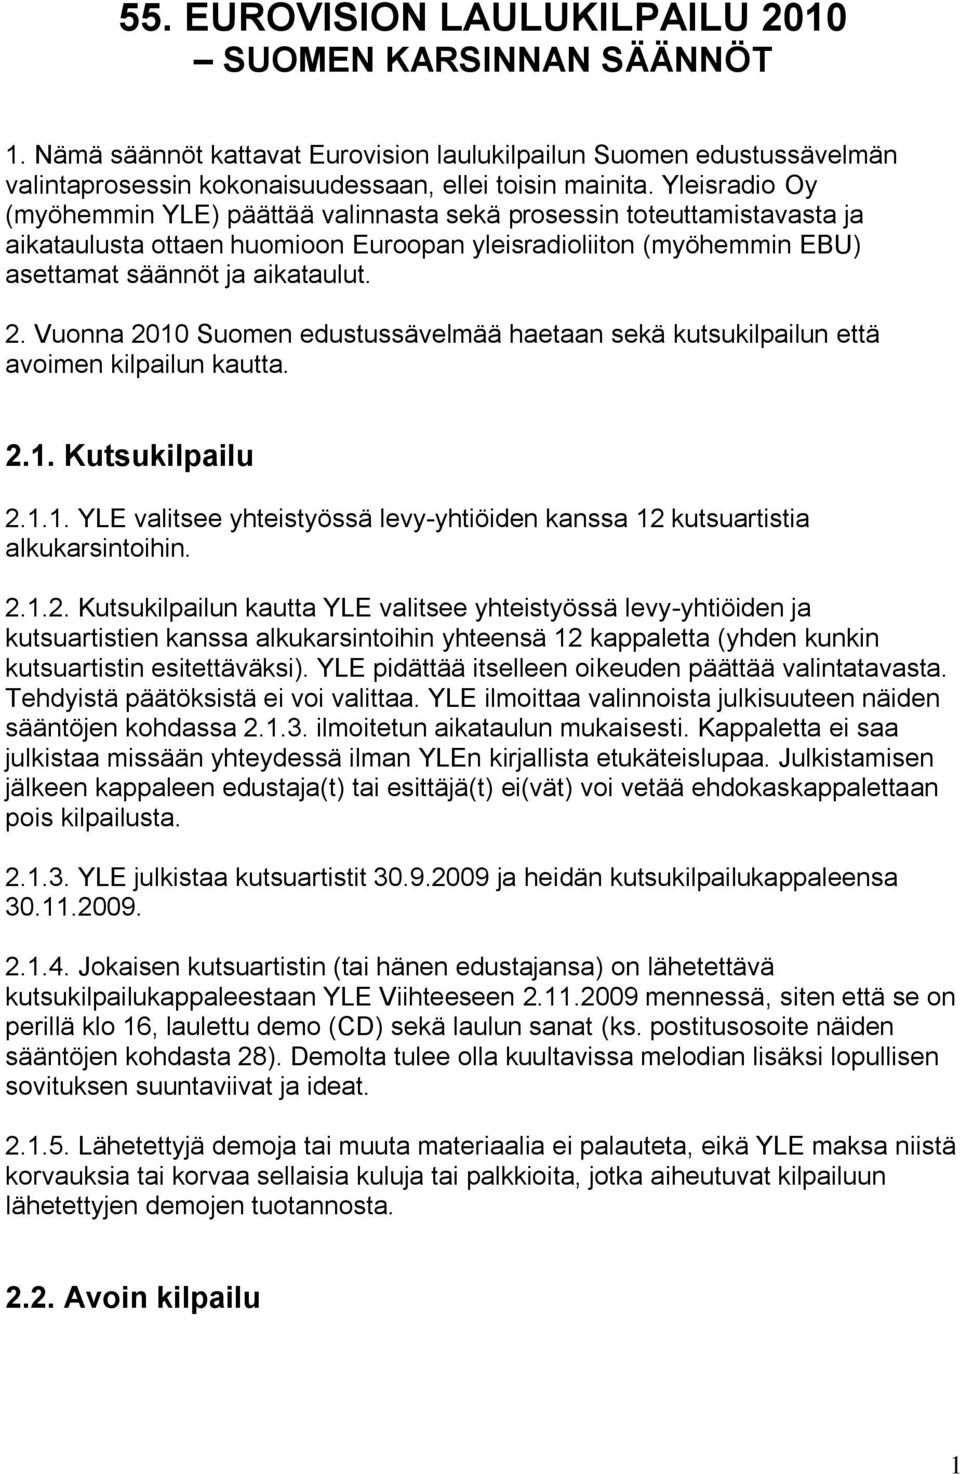 Vuonna 2010 Suomen edustussävelmää haetaan sekä kutsukilpailun että avoimen kilpailun kautta. 2.1. Kutsukilpailu 2.1.1. YLE valitsee yhteistyössä levy-yhtiöiden kanssa 12 kutsuartistia alkukarsintoihin.